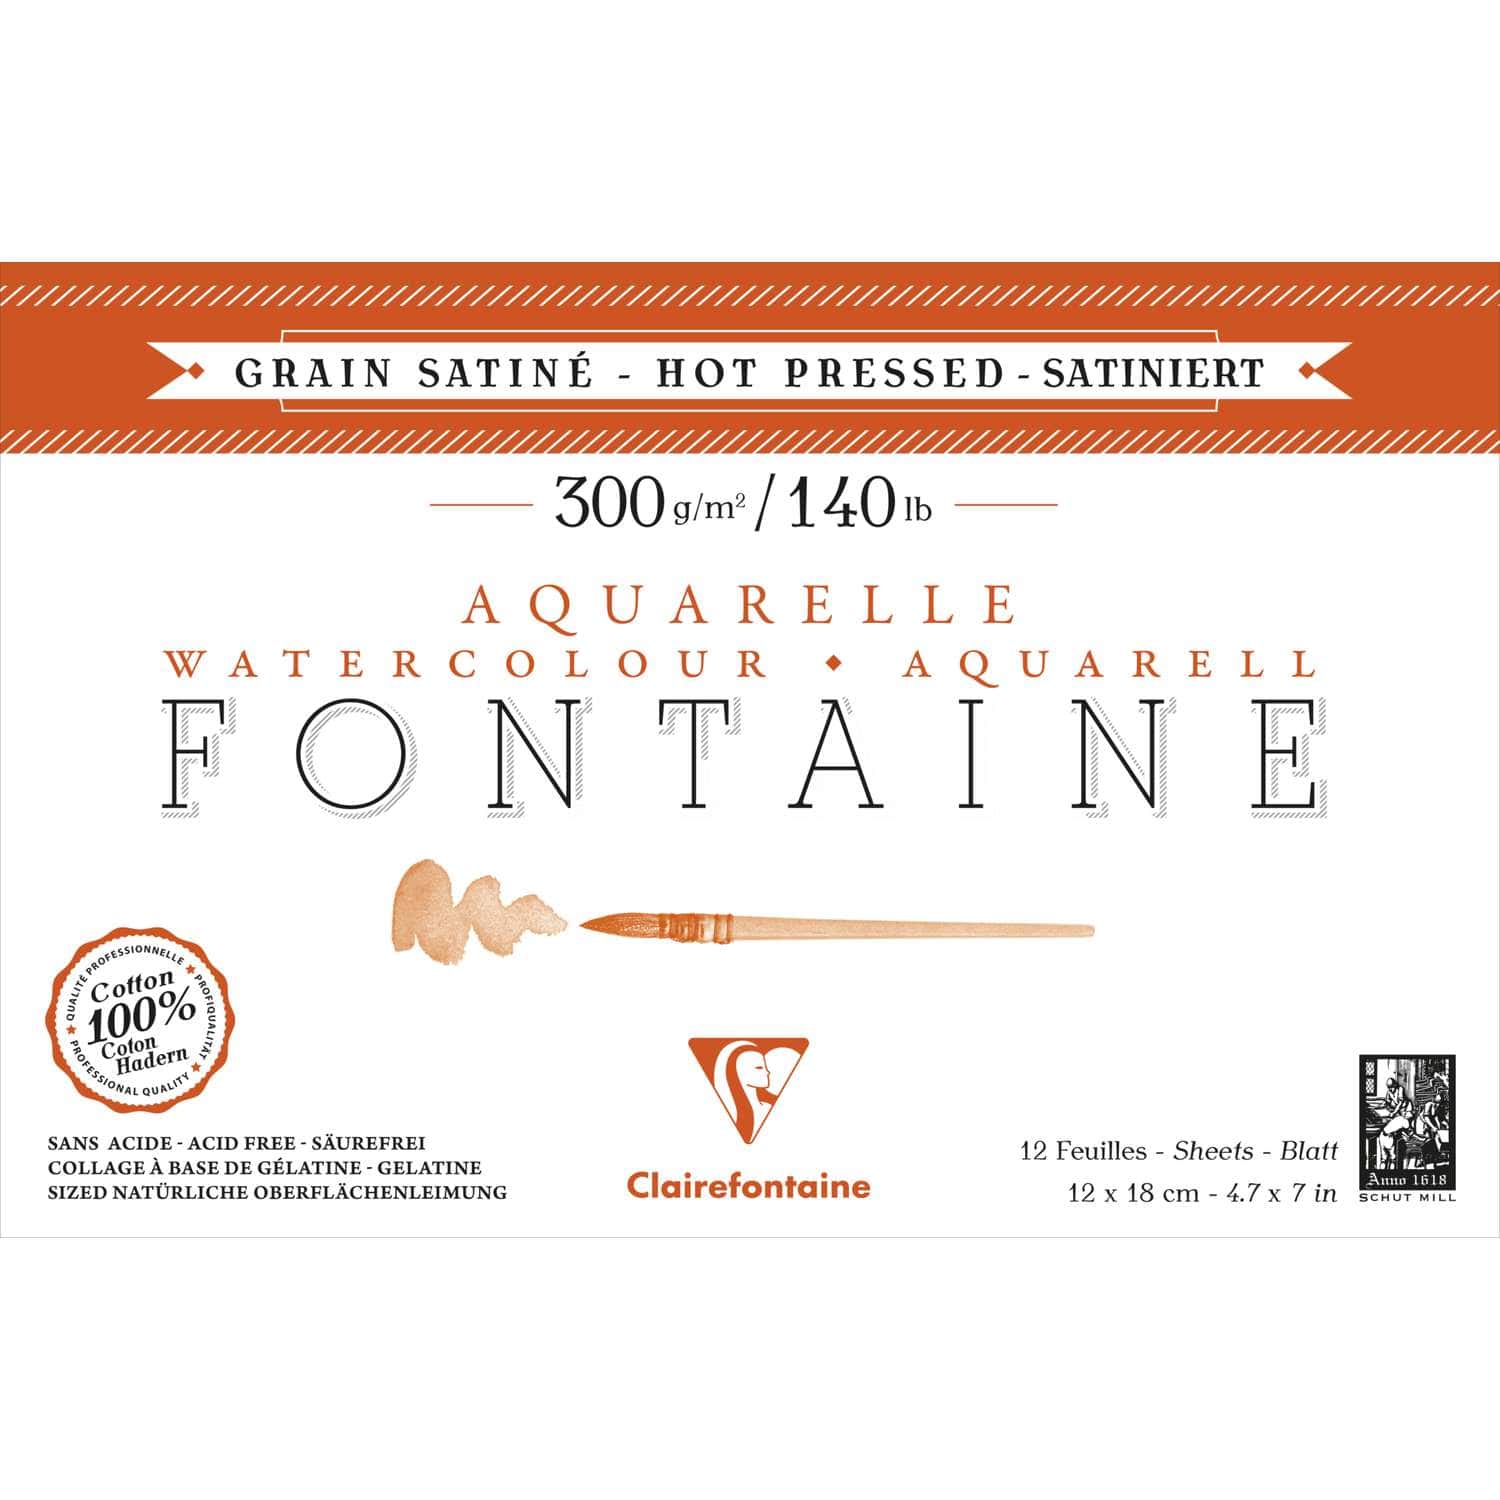 Fontaine Aquarelle carnet cousu 24F A5 300g grain satiné (cartes postales)/  Pce